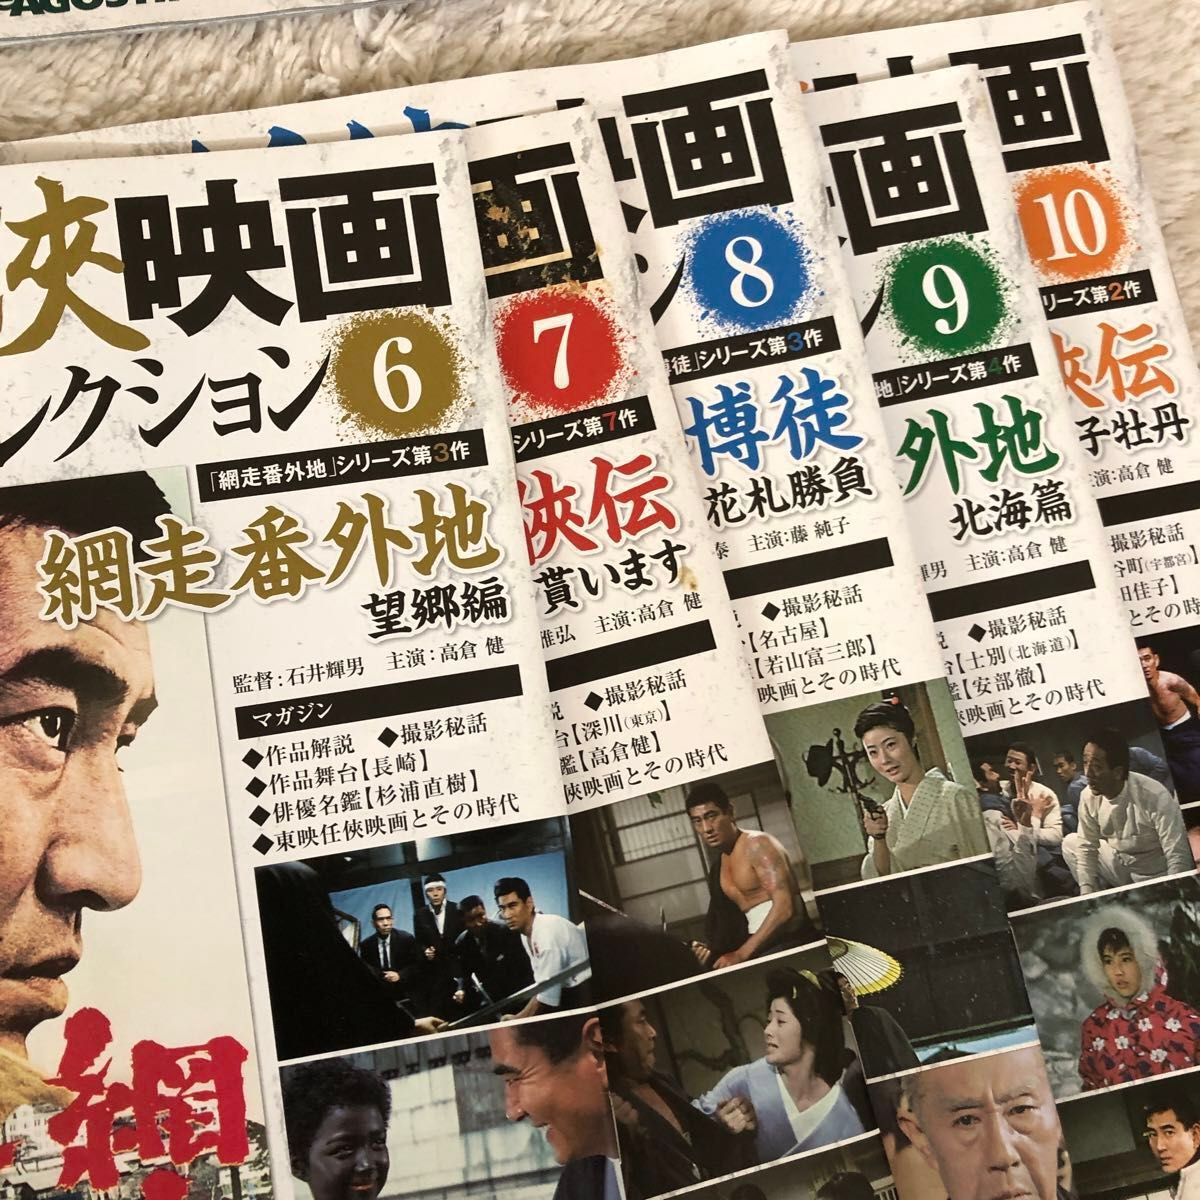 東映任侠映画　DVDコレクション1〜10 デアゴスティーニ おまけ付き